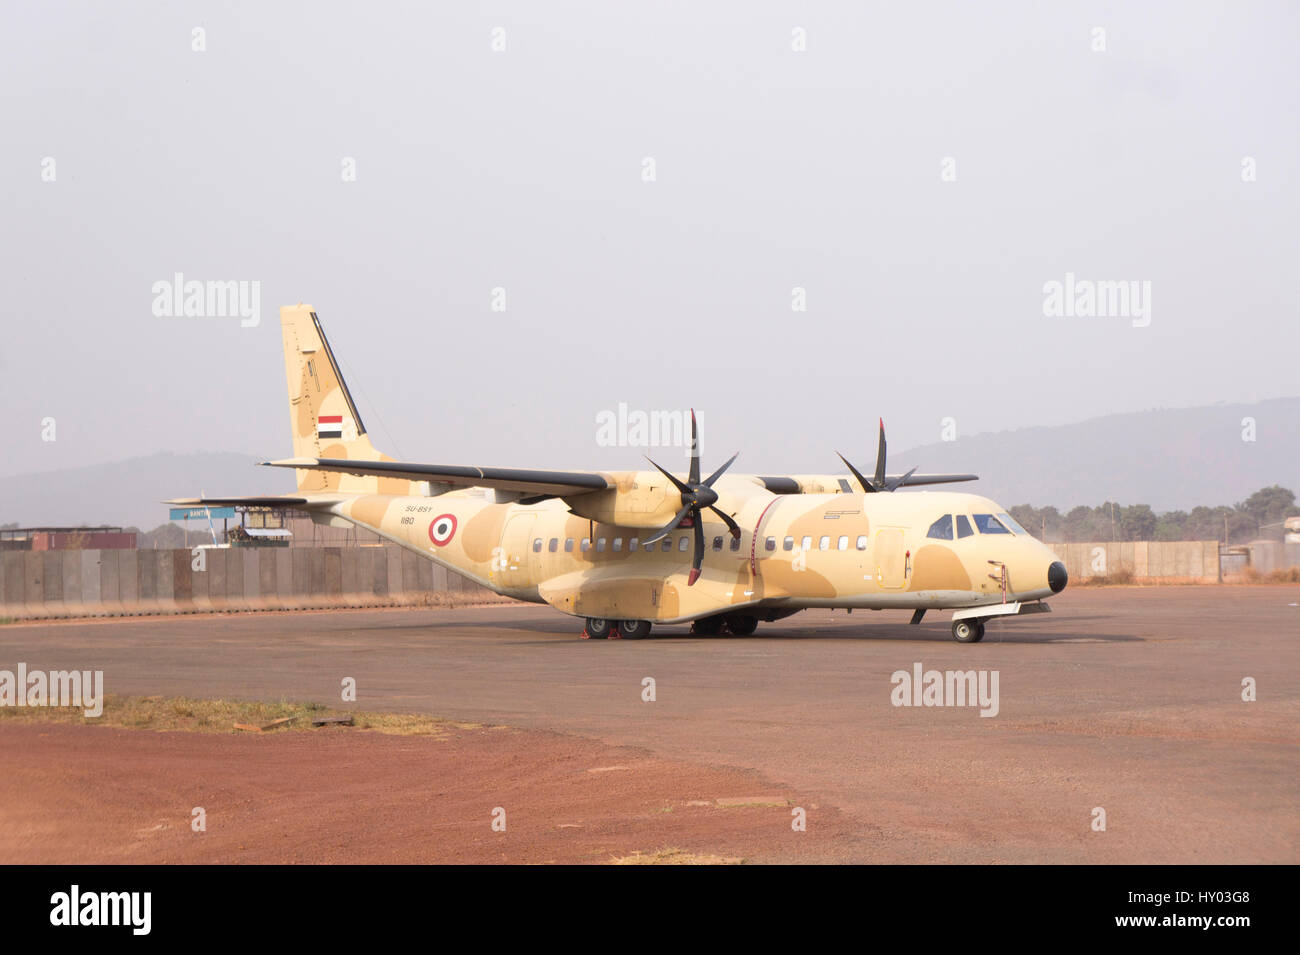 EADS CASA C-295 un avion militaire portant les marquages de l'Armée de l'air égyptienne se dresse sur la piste à Bangui, République centrafricaine, Feb 2017 Banque D'Images